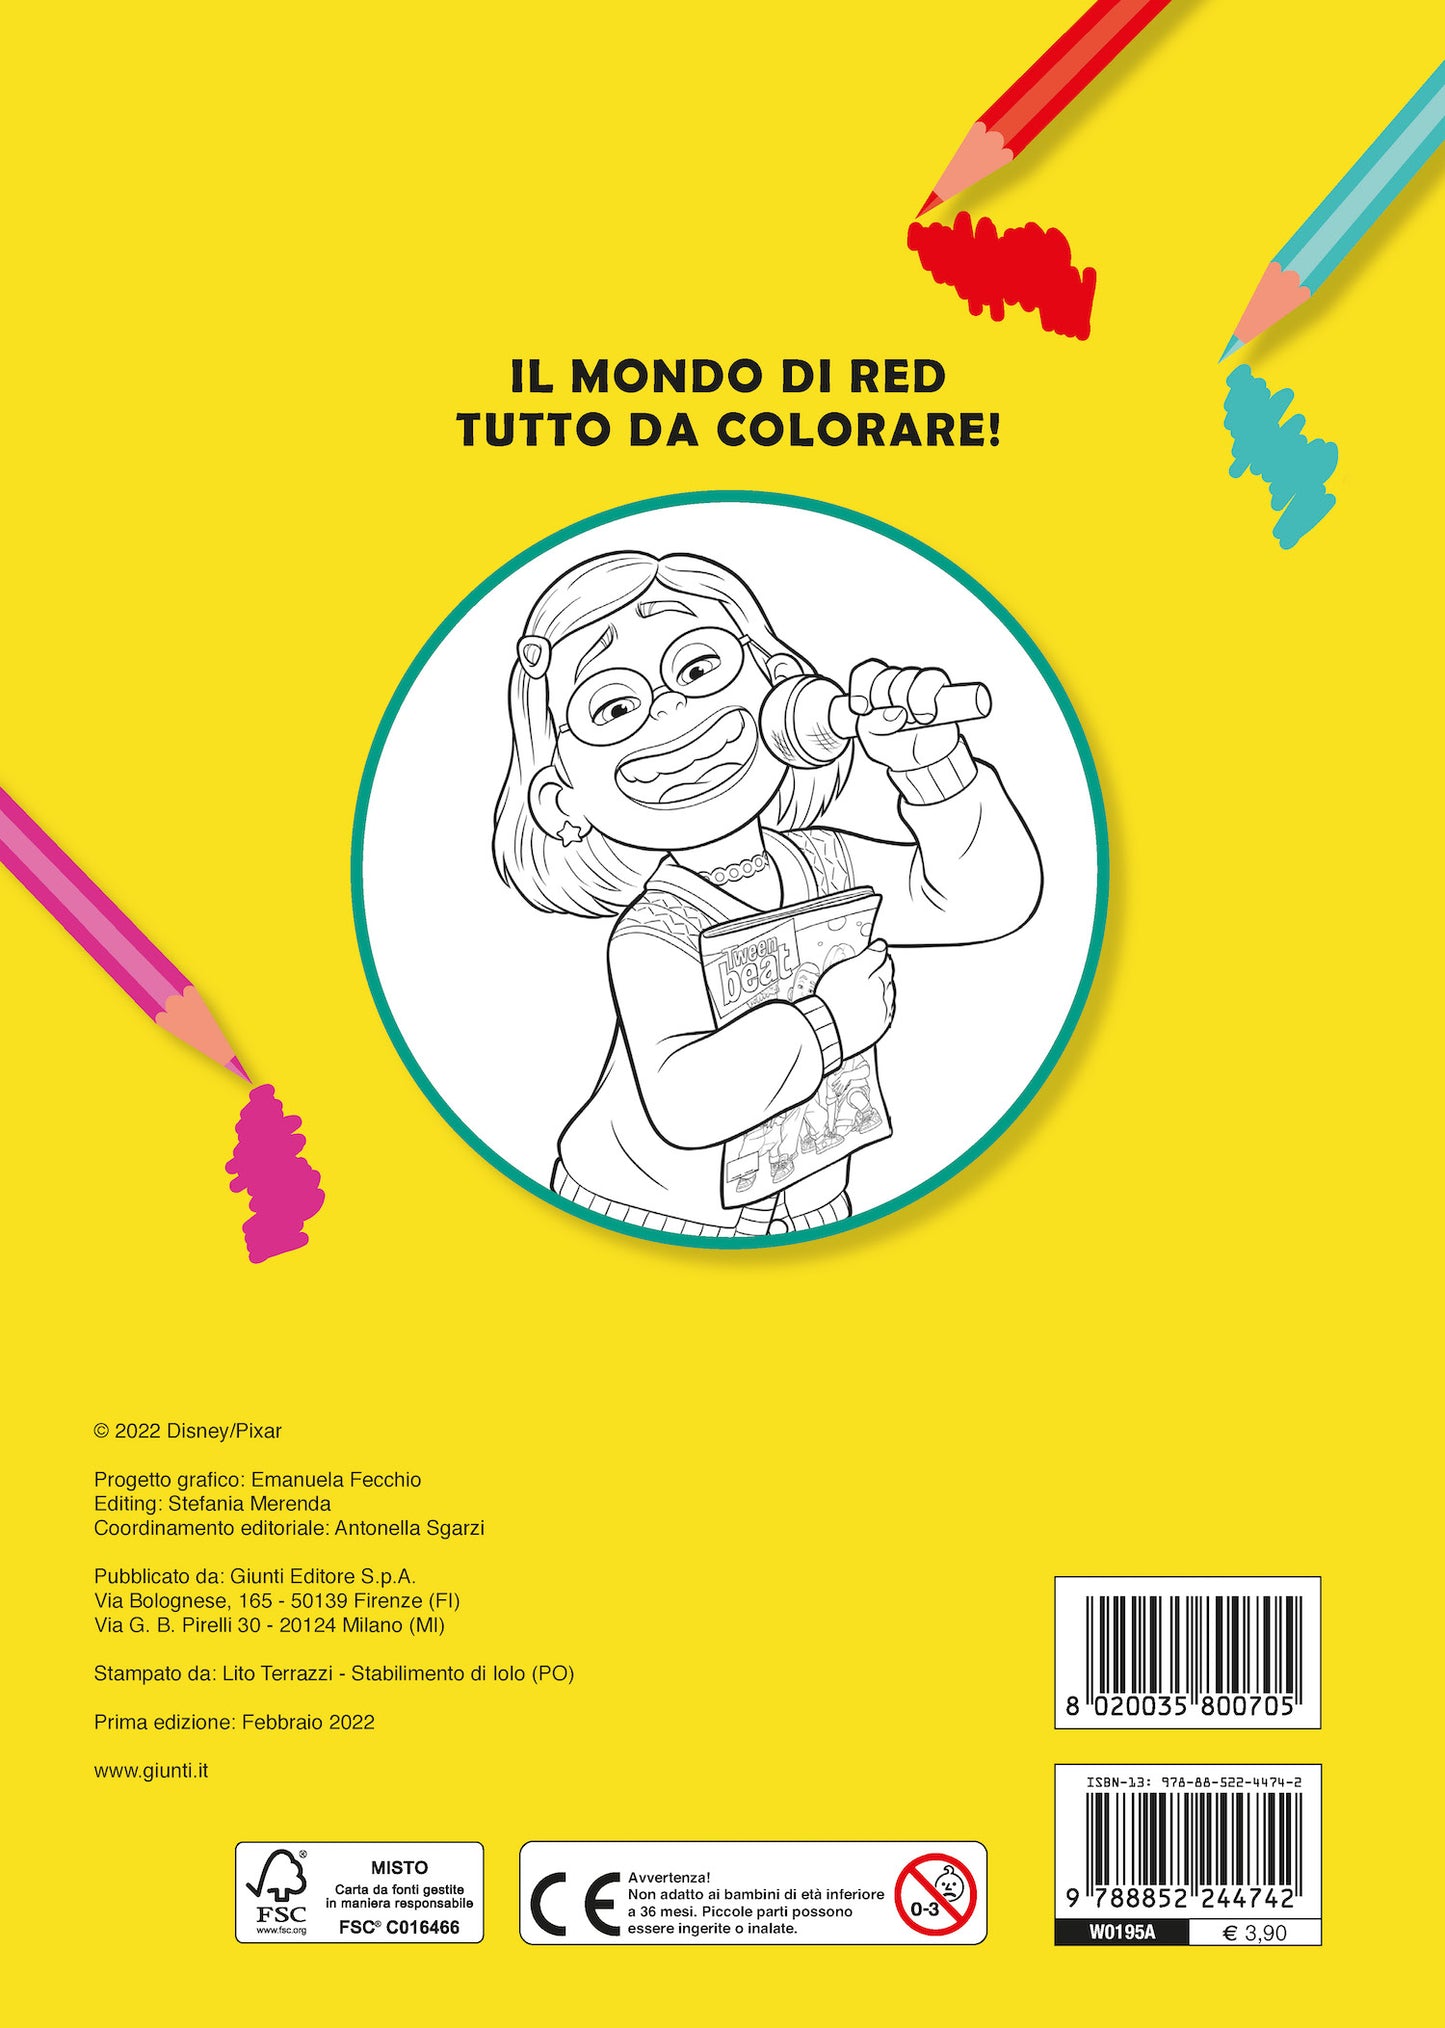 Red Primo album da colorare::Rosso come un panda